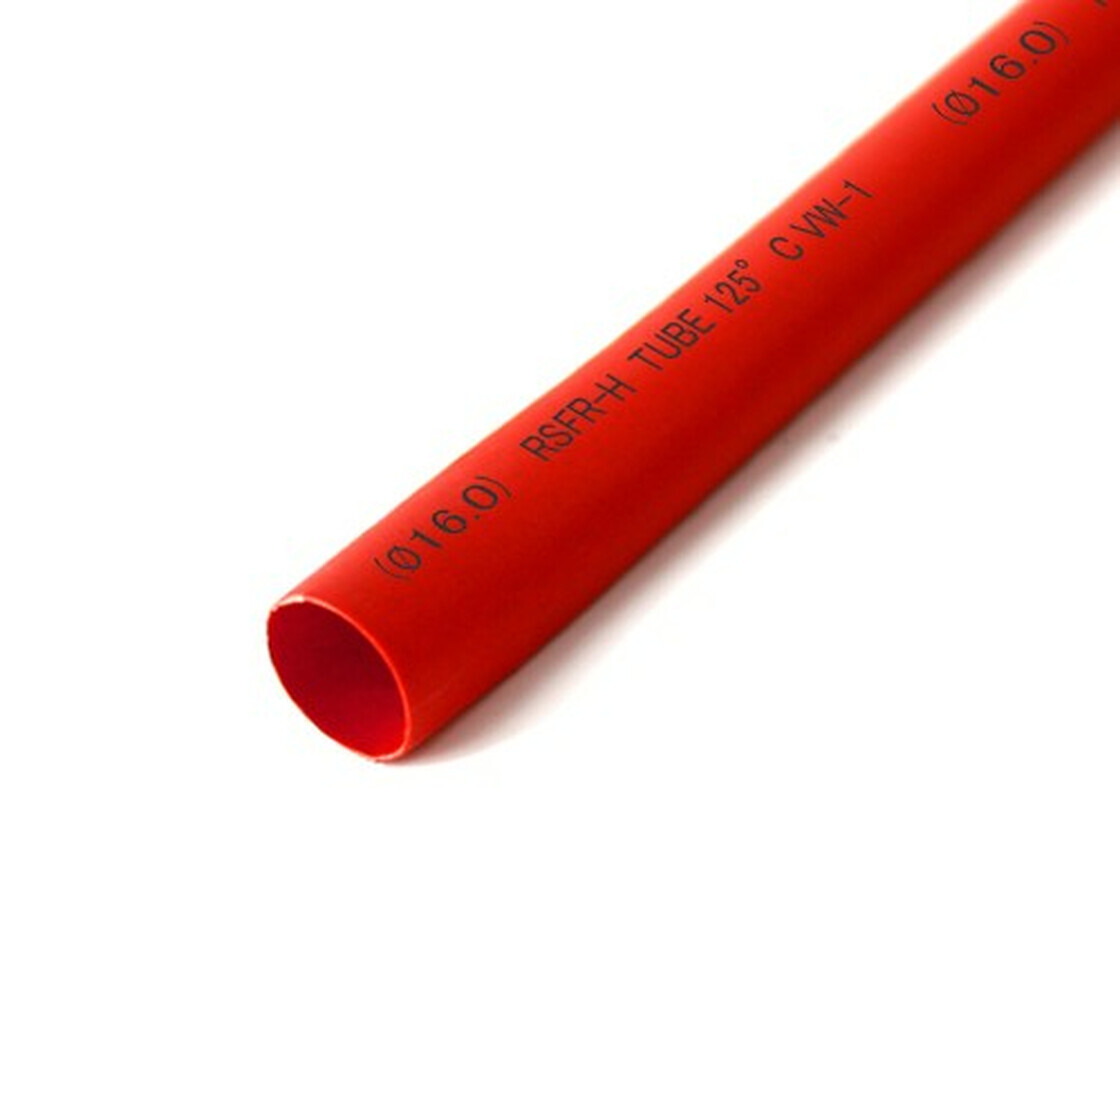 Schrumpfschlauch rot 16mm Durchmesser 2:1 Meterware, 0,77 €